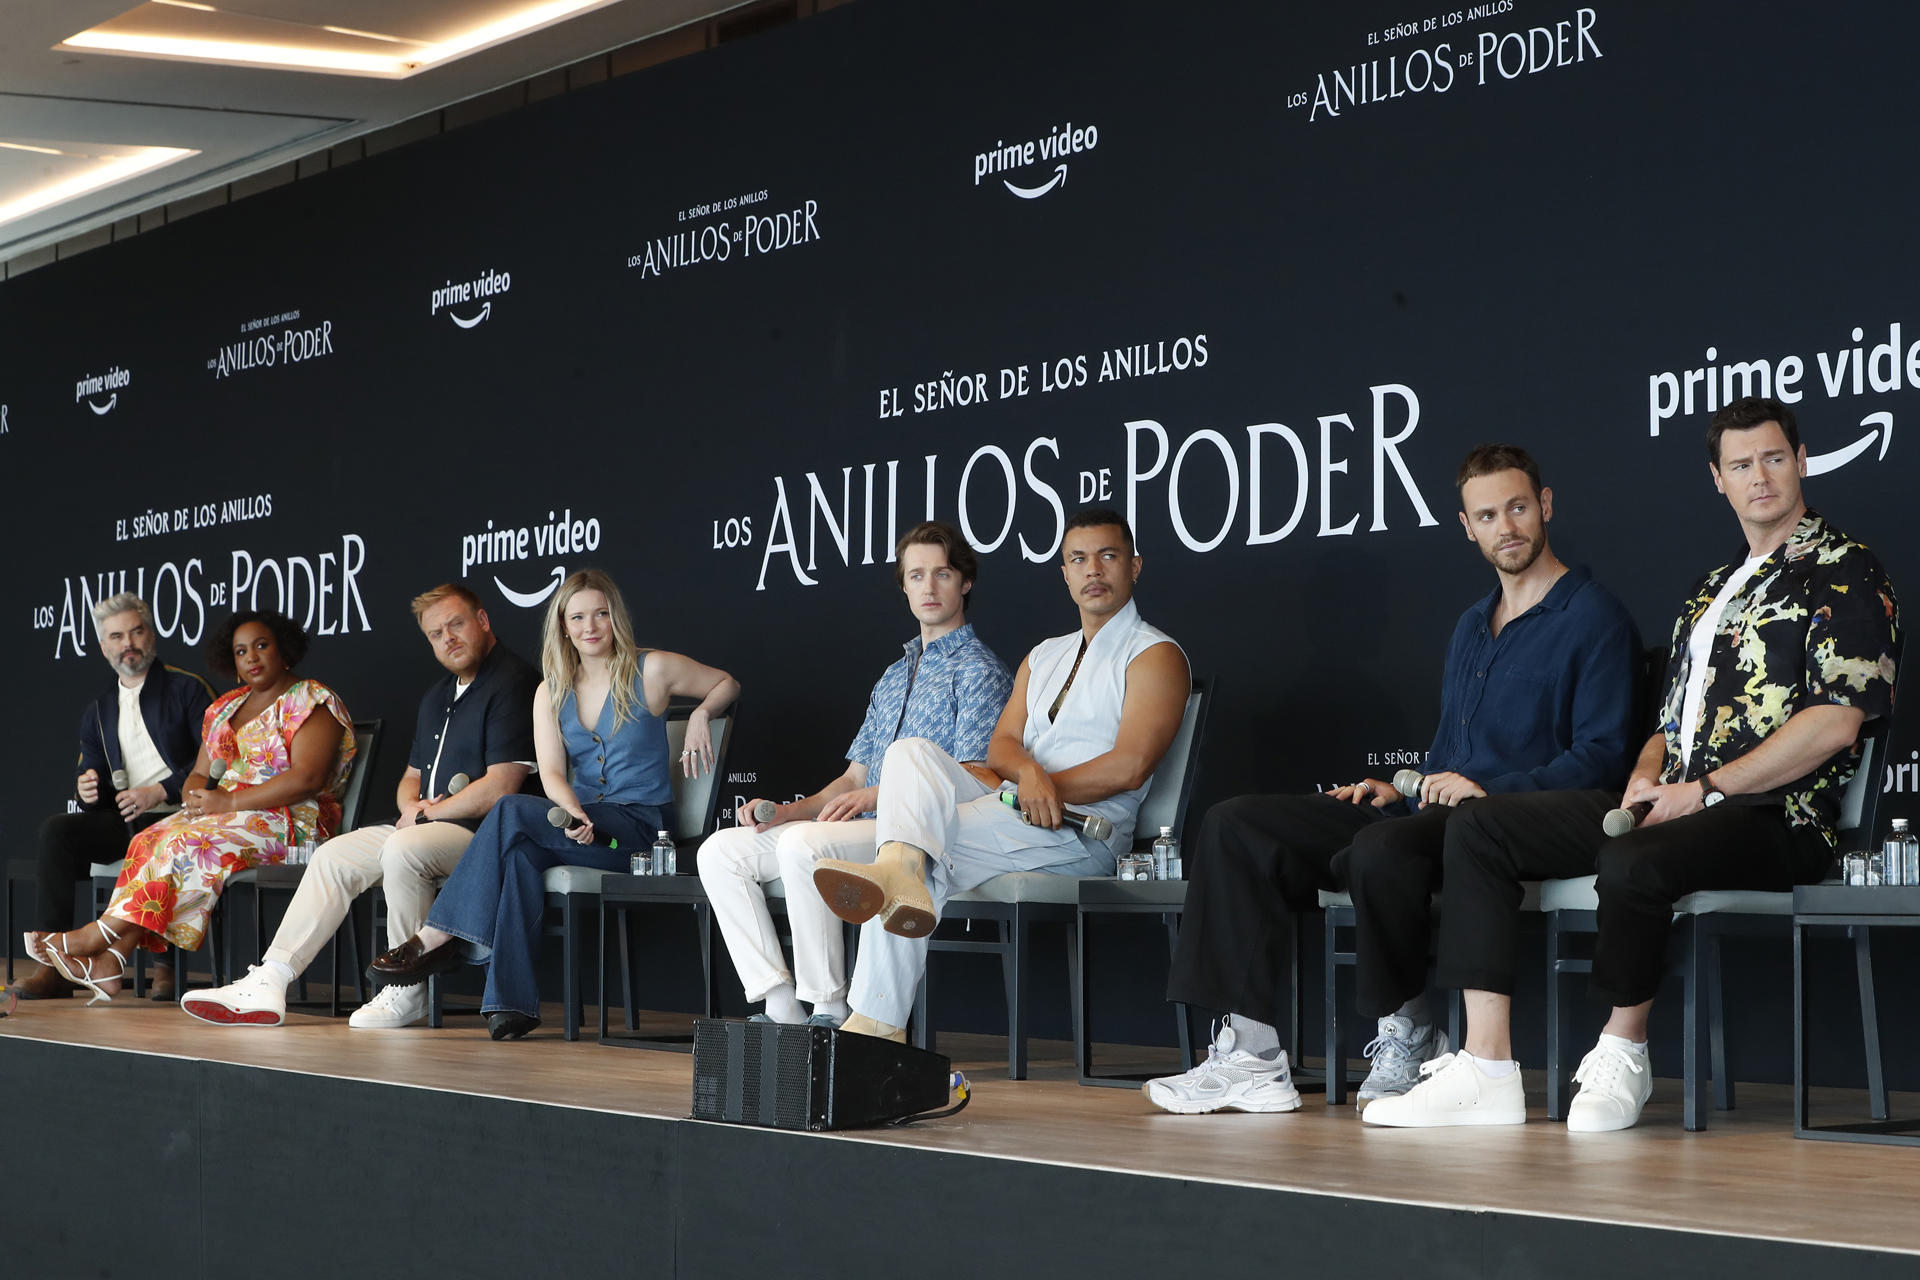 Foto de archivo de varios de los integrantes del elenco de la serie de Amazon Primer "Los anillos de poder", durante una rueda de prensa en Ciudad de México. EFE/Mario Guzmán